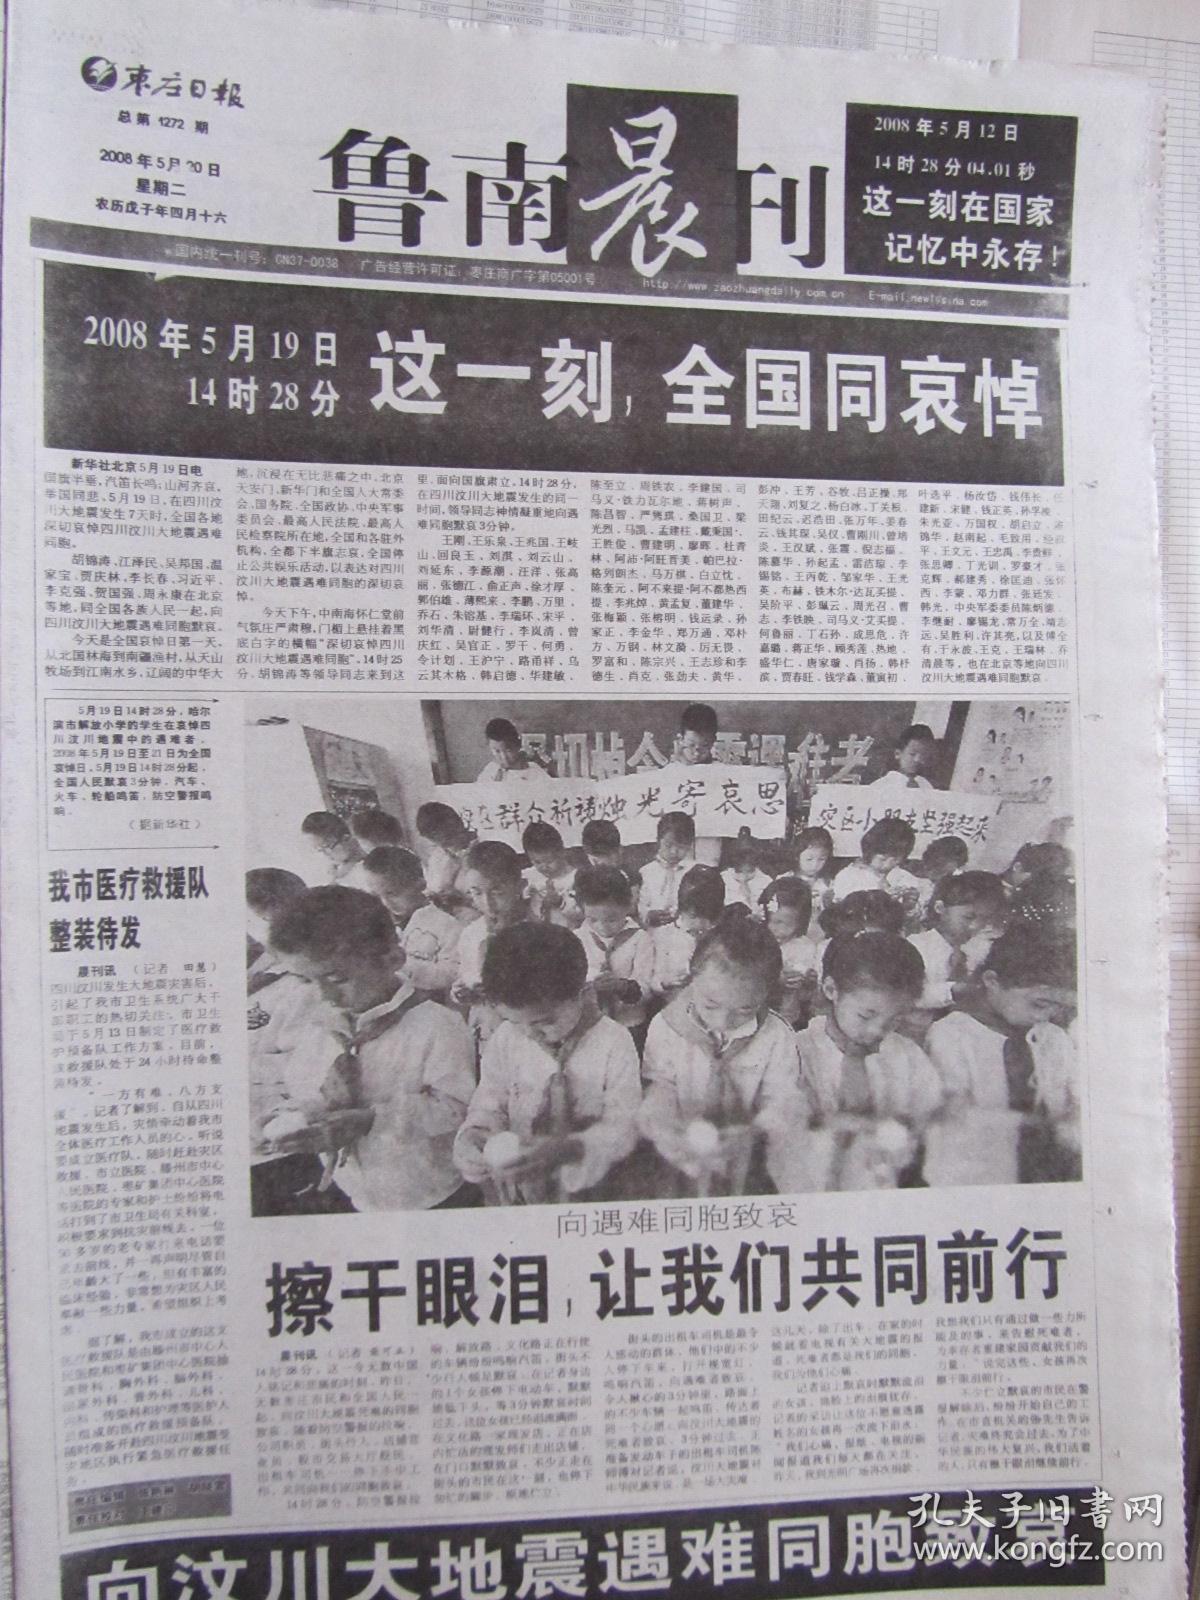 2008年5月20日鲁南晨刊2008年5月20日生日报汶川地震哀悼日报纸